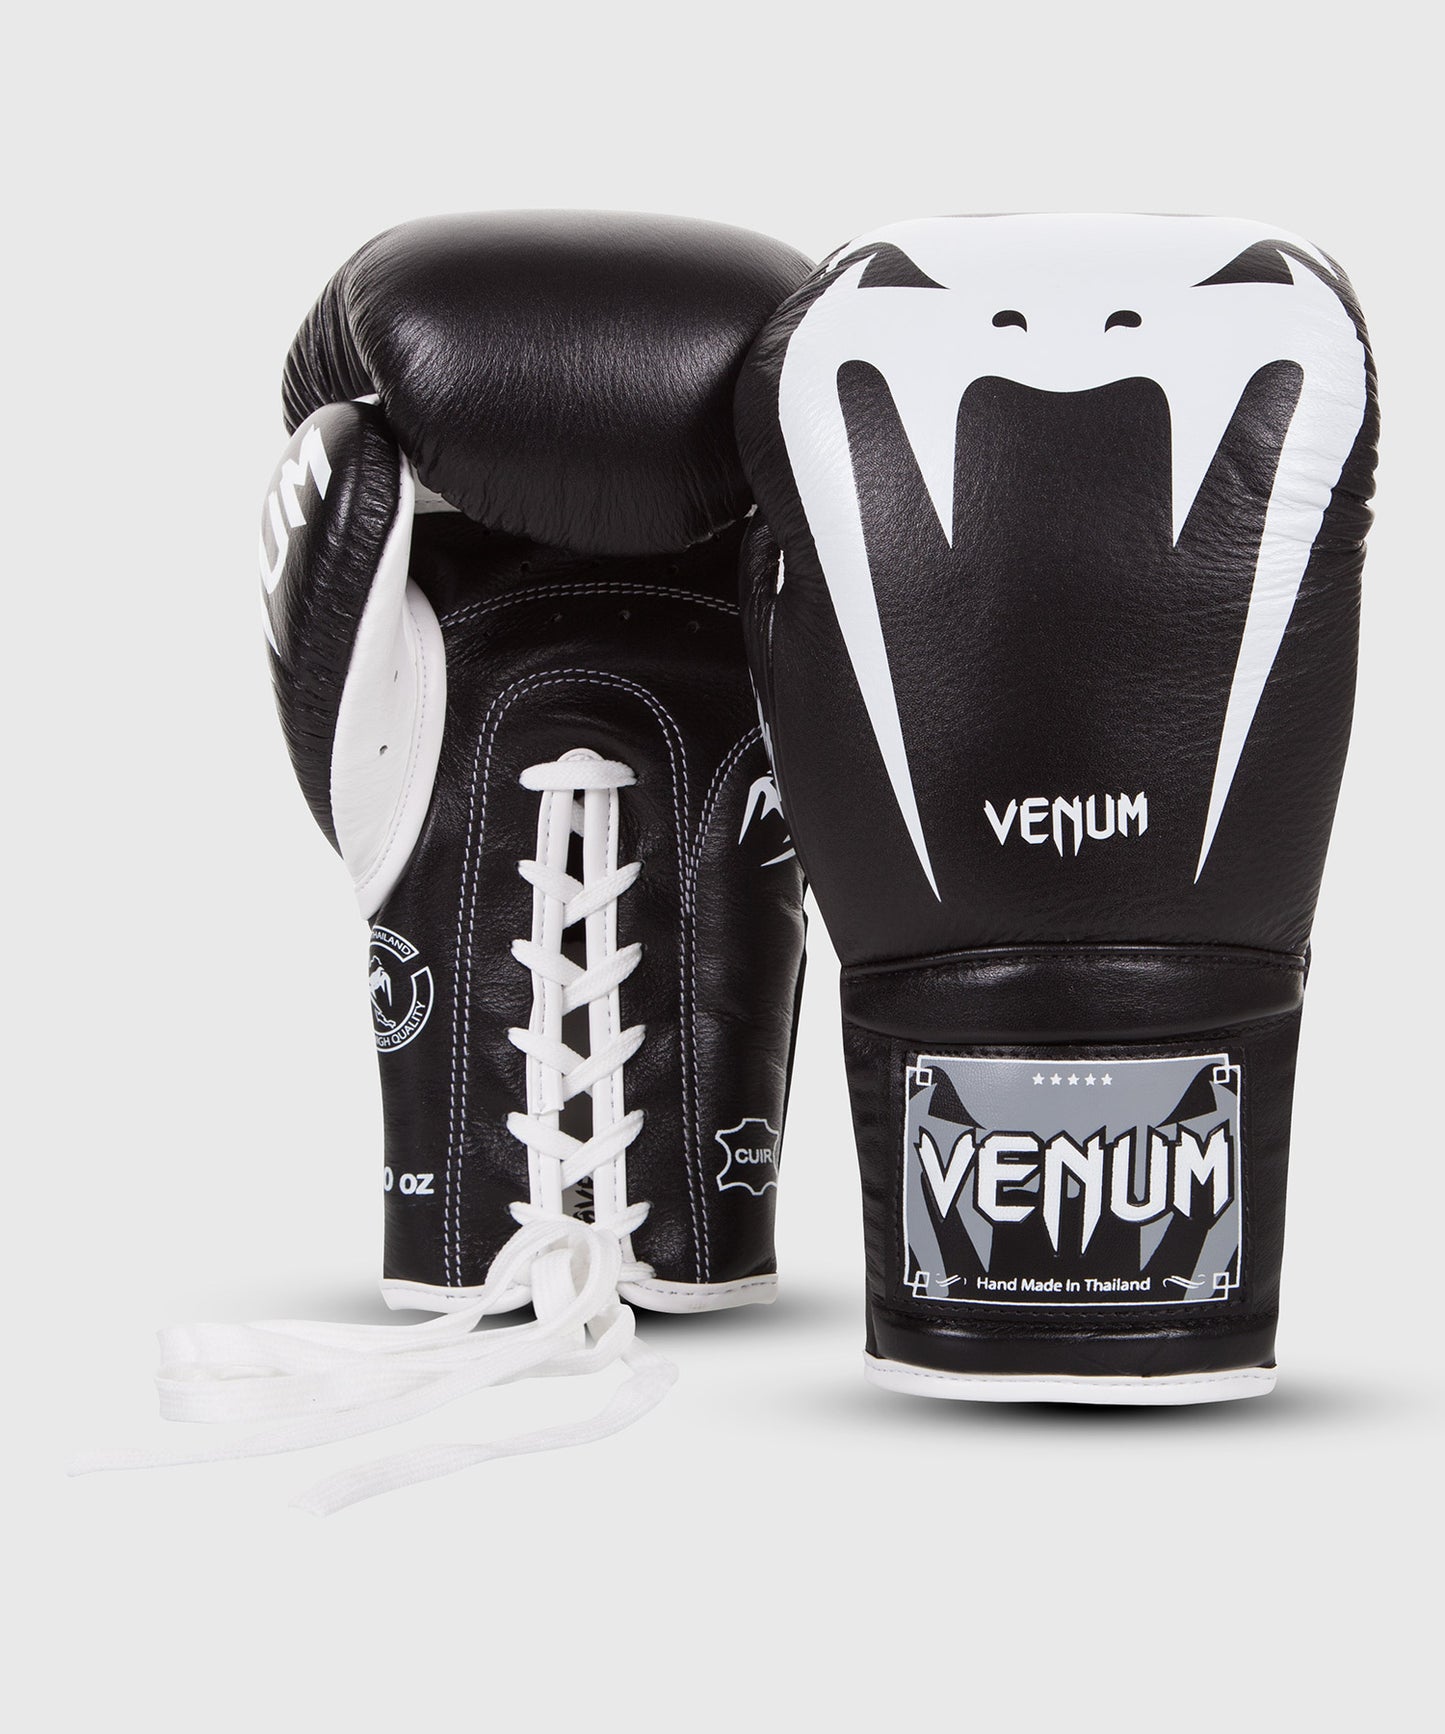 Venum Giant 3.0 Boxhandschuhe - Nappaleder - Mit Schnürung - Schwarz